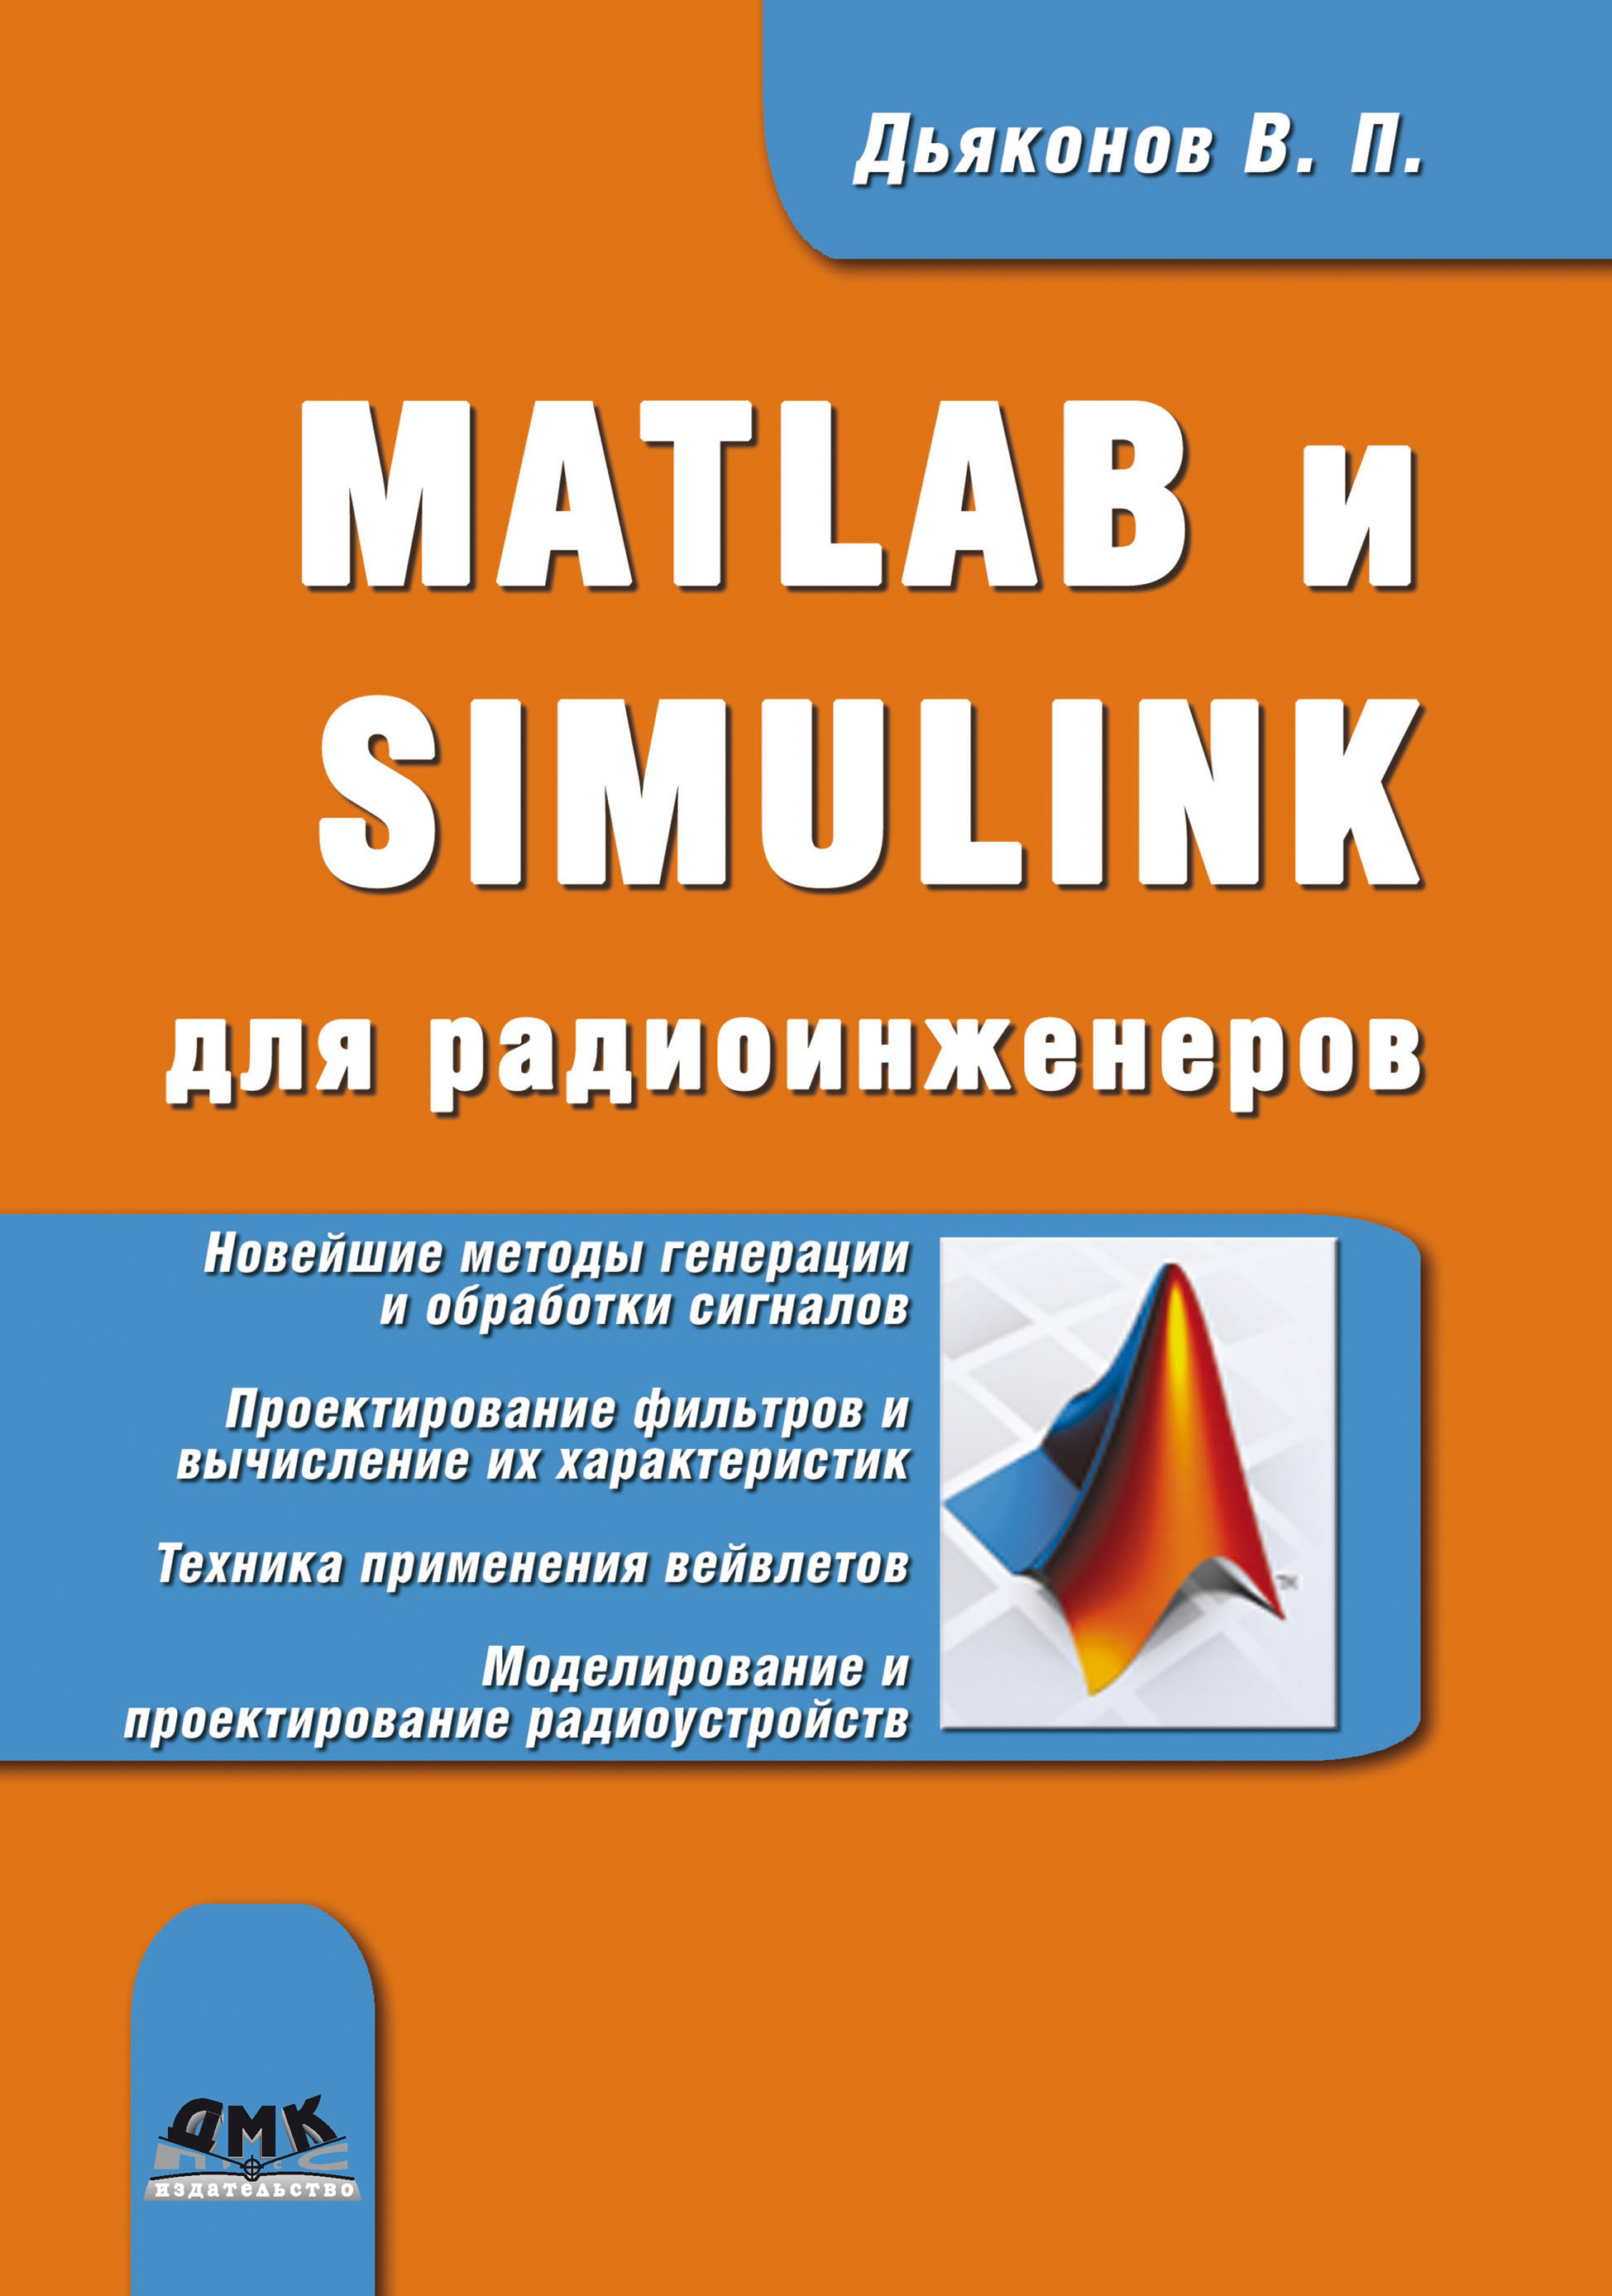 MATLAB и SIMULINK для радиоинженеров